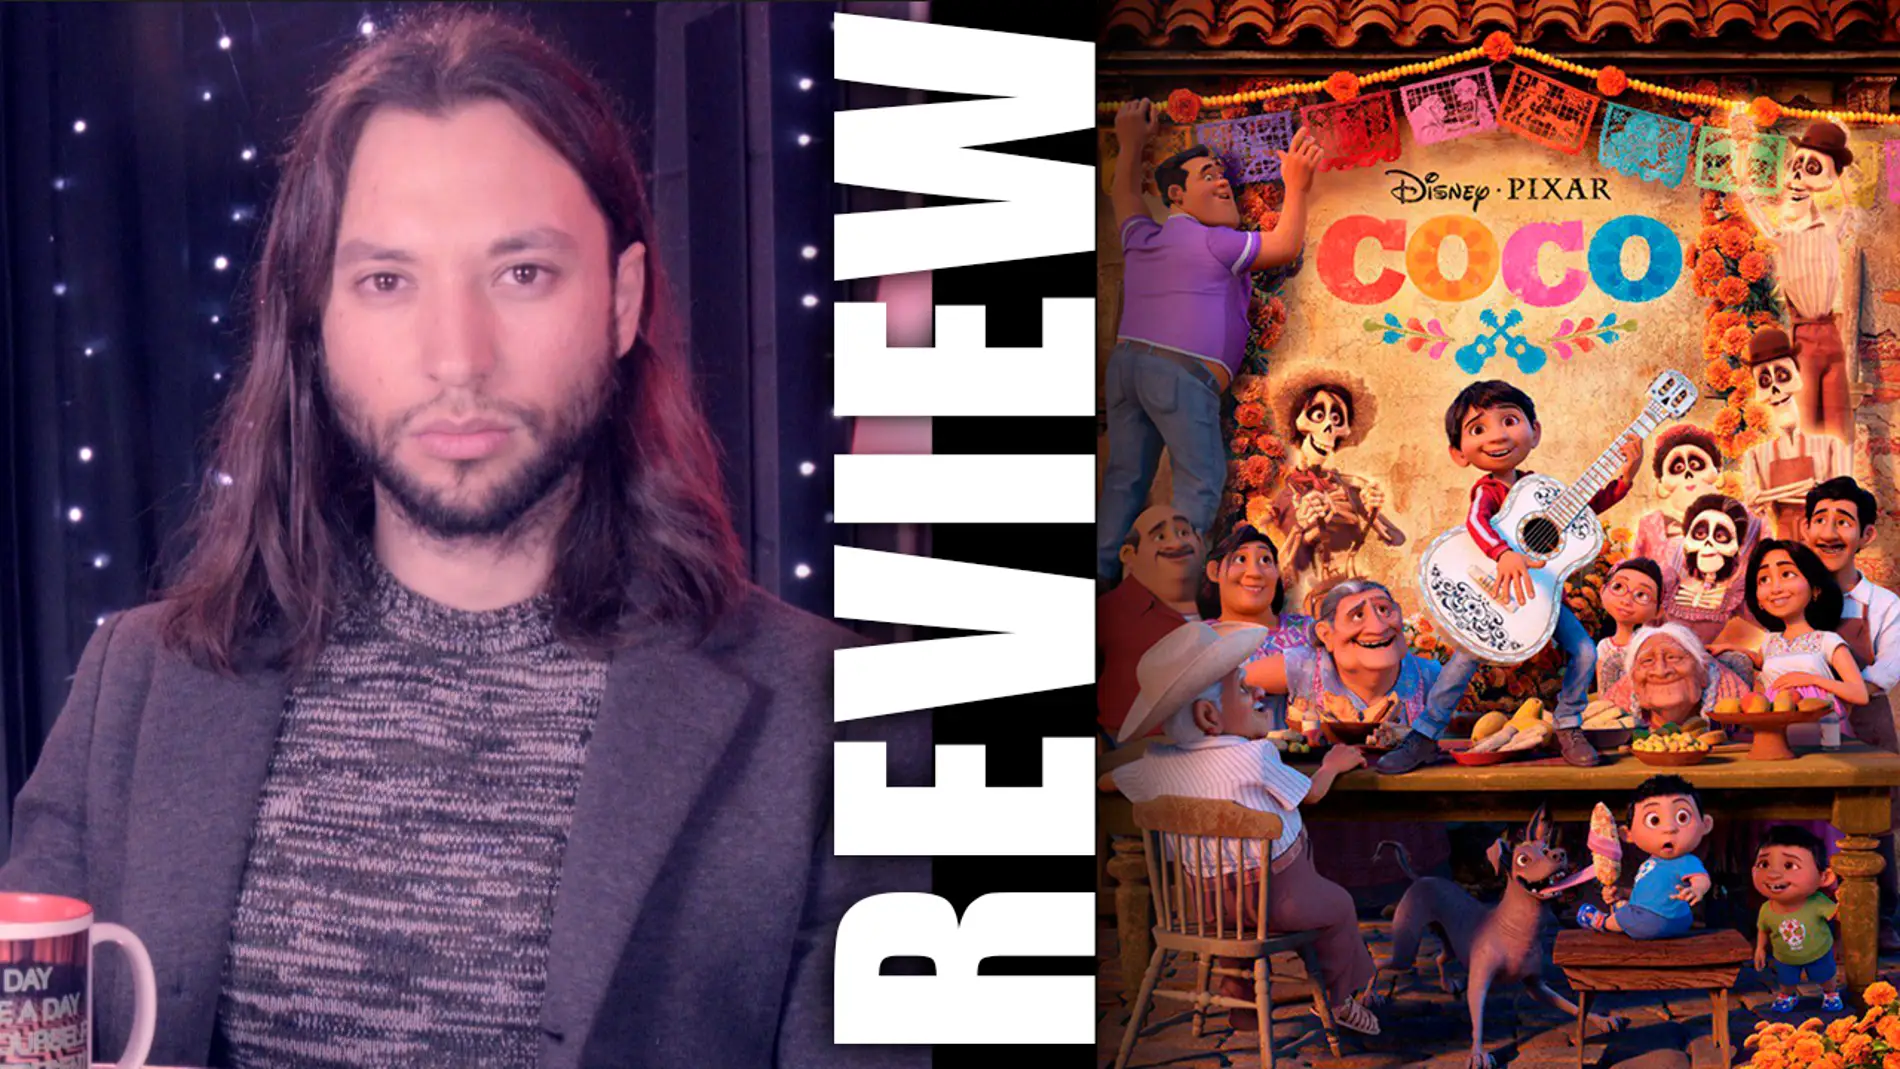 El chico morera sobre 'Coco': 'Una película para toda la familia'